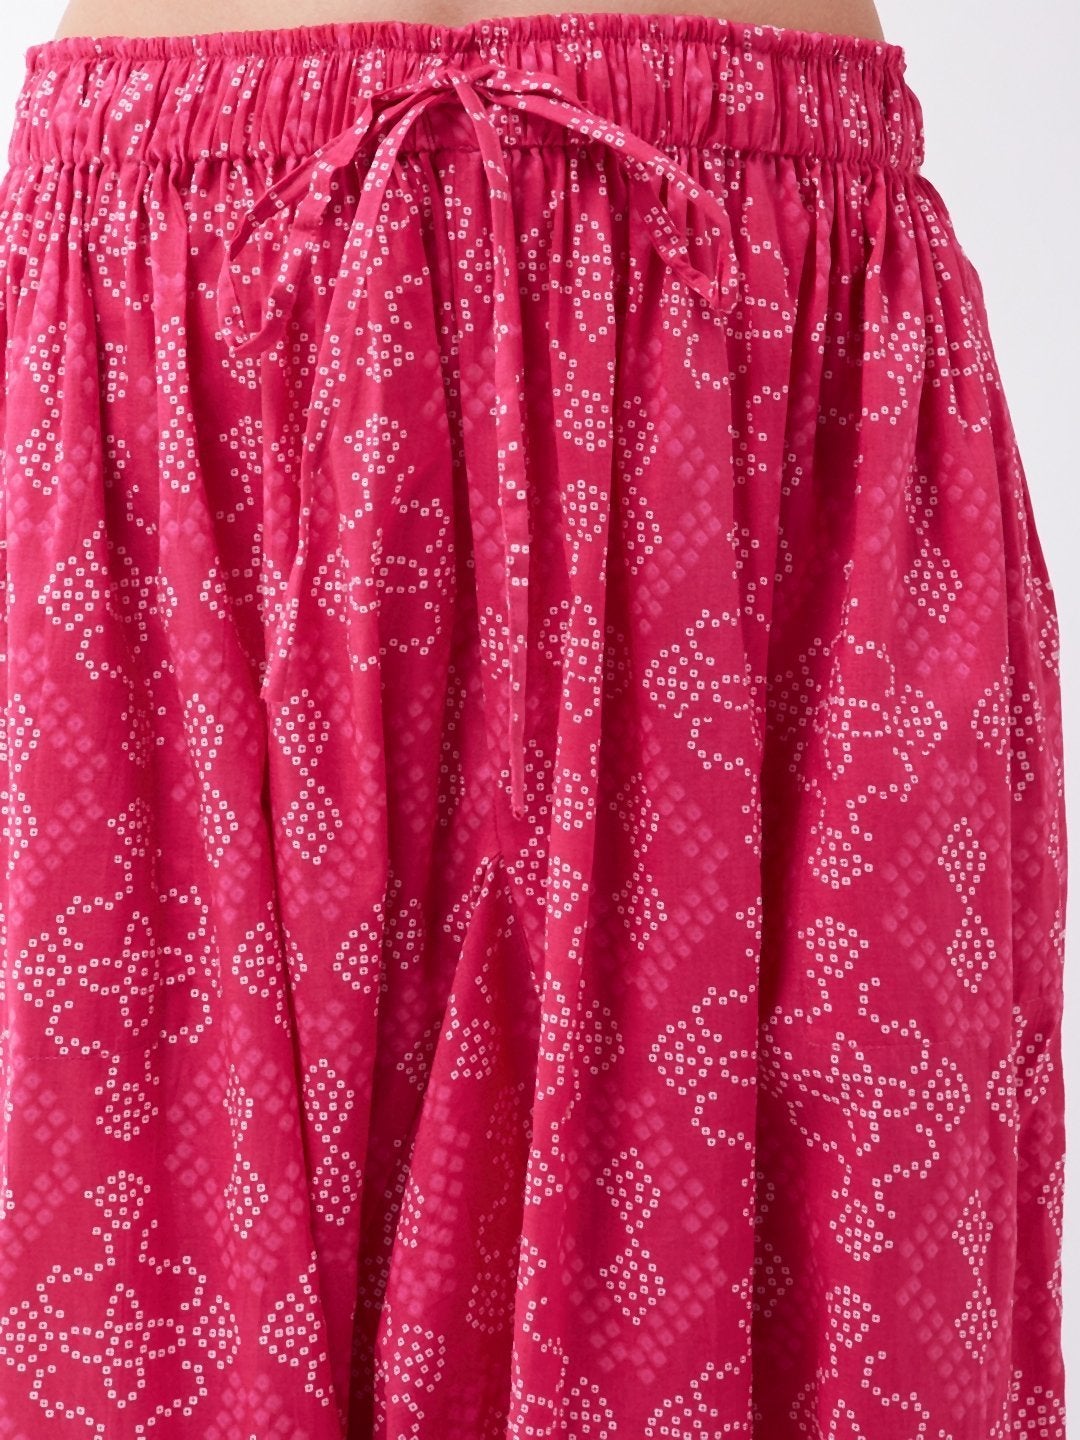 Women's Pink Bandhini Harem Pants - InWeave